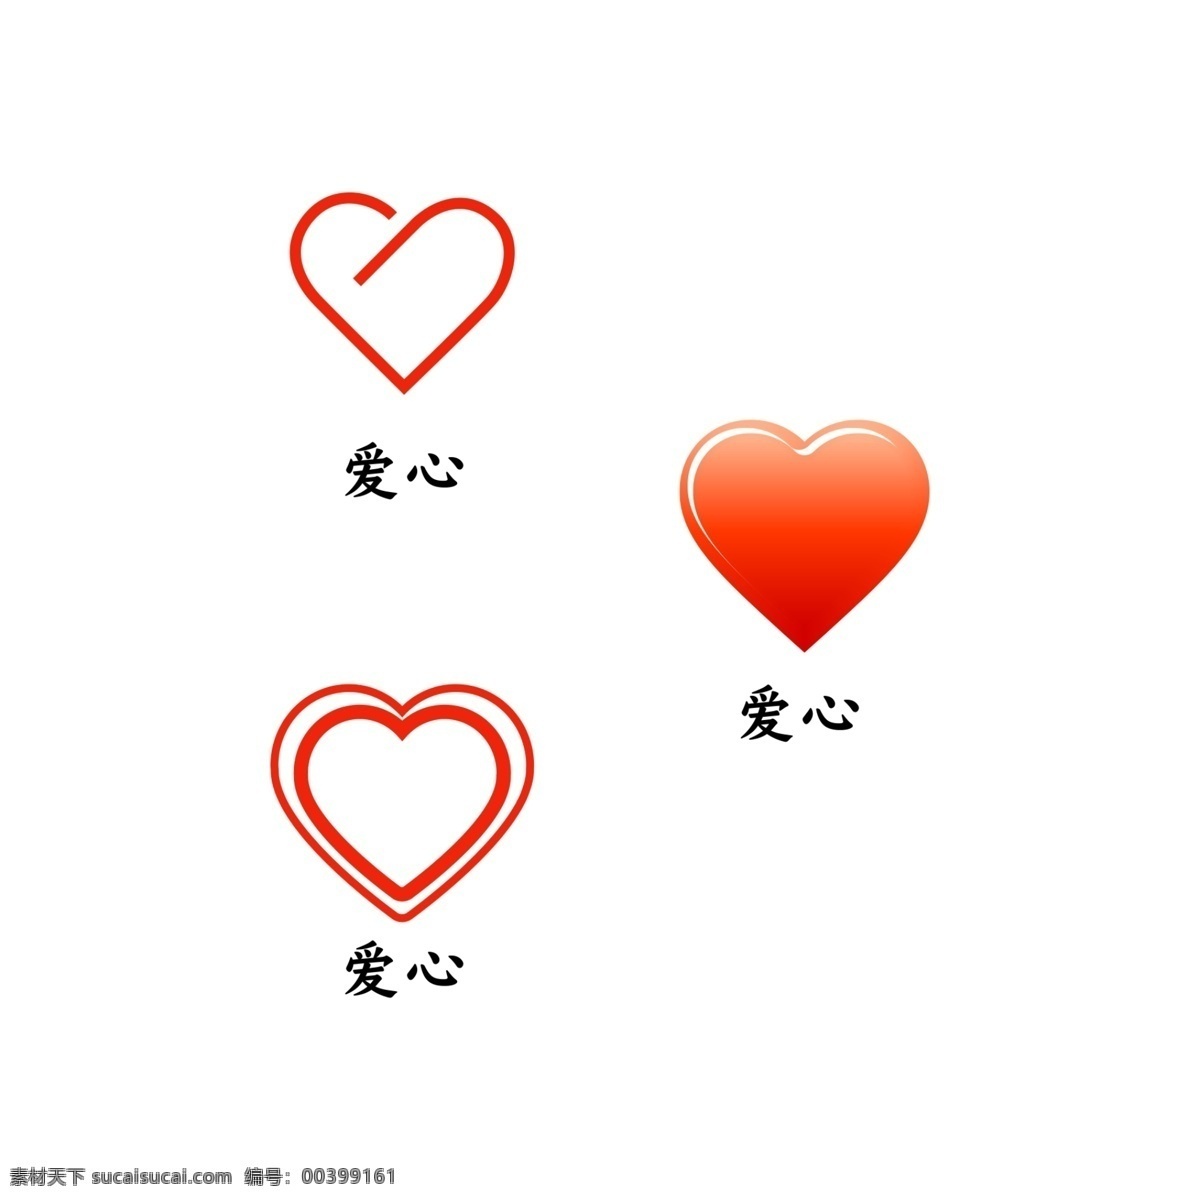 红色爱心 爱心 红心 红心设计 爱心造型 心形图标